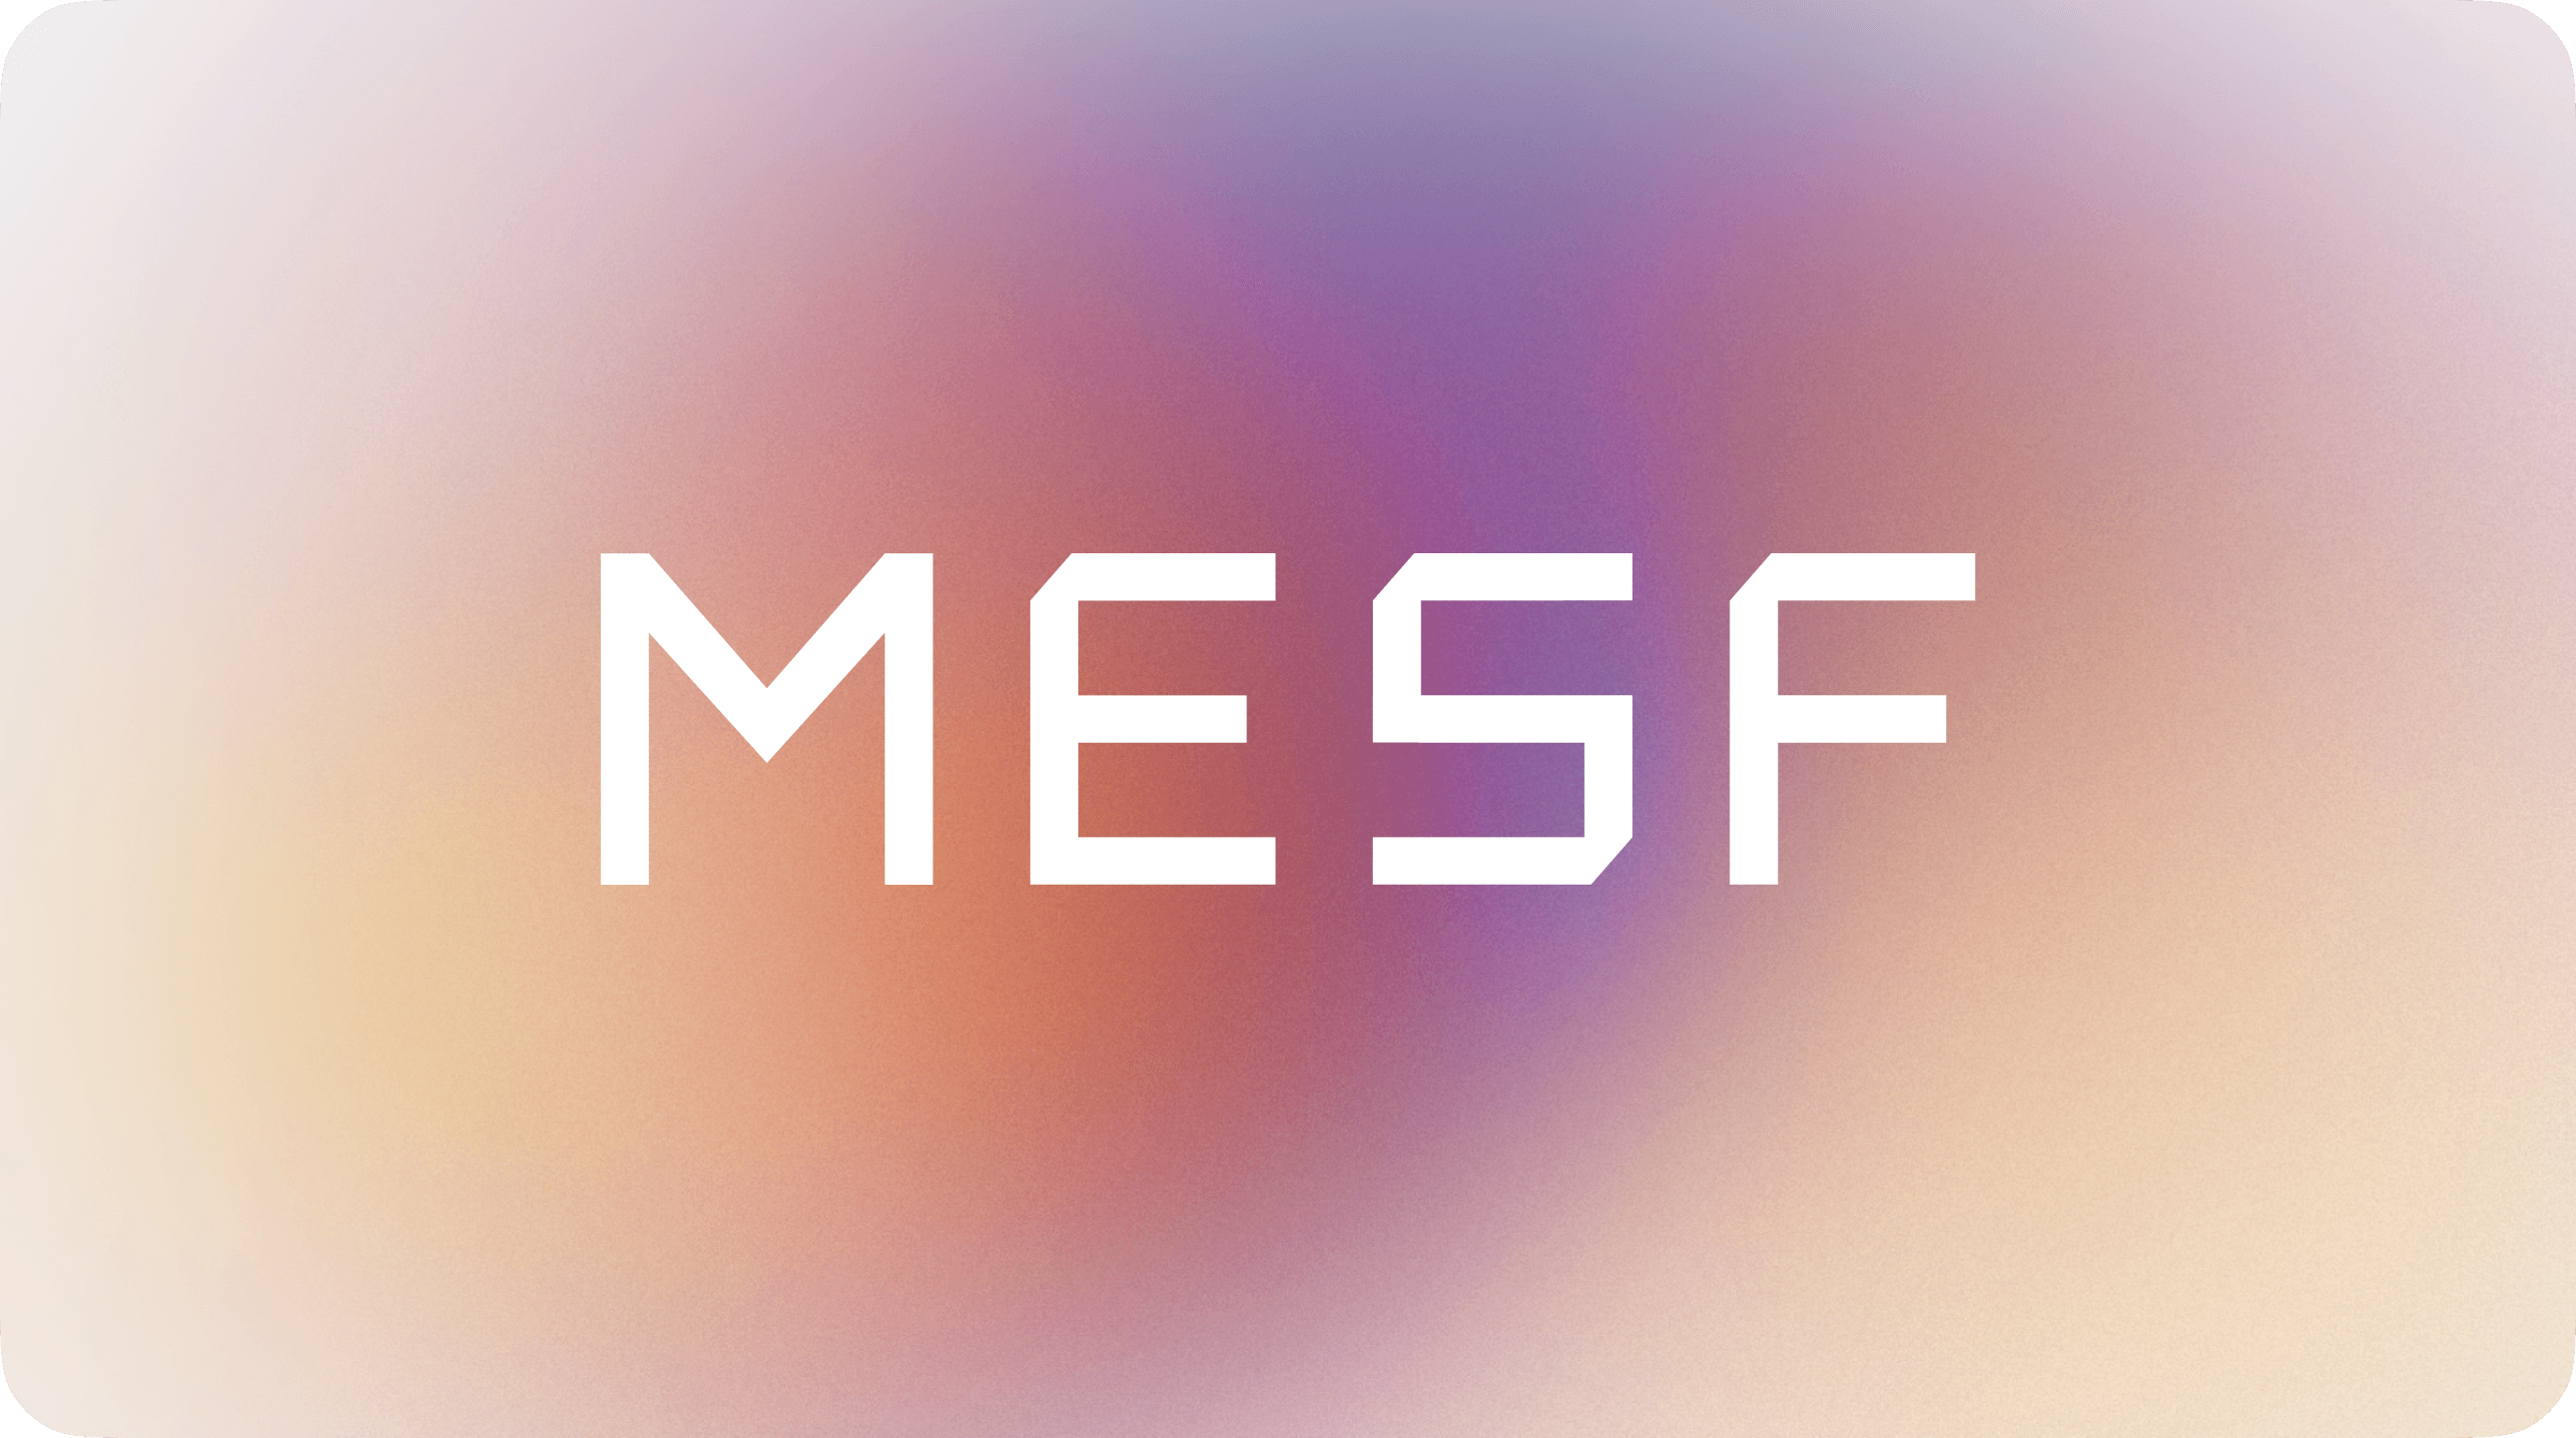 Сайт для MESF — ИТ-компании, специализирующейся на электрогенерации